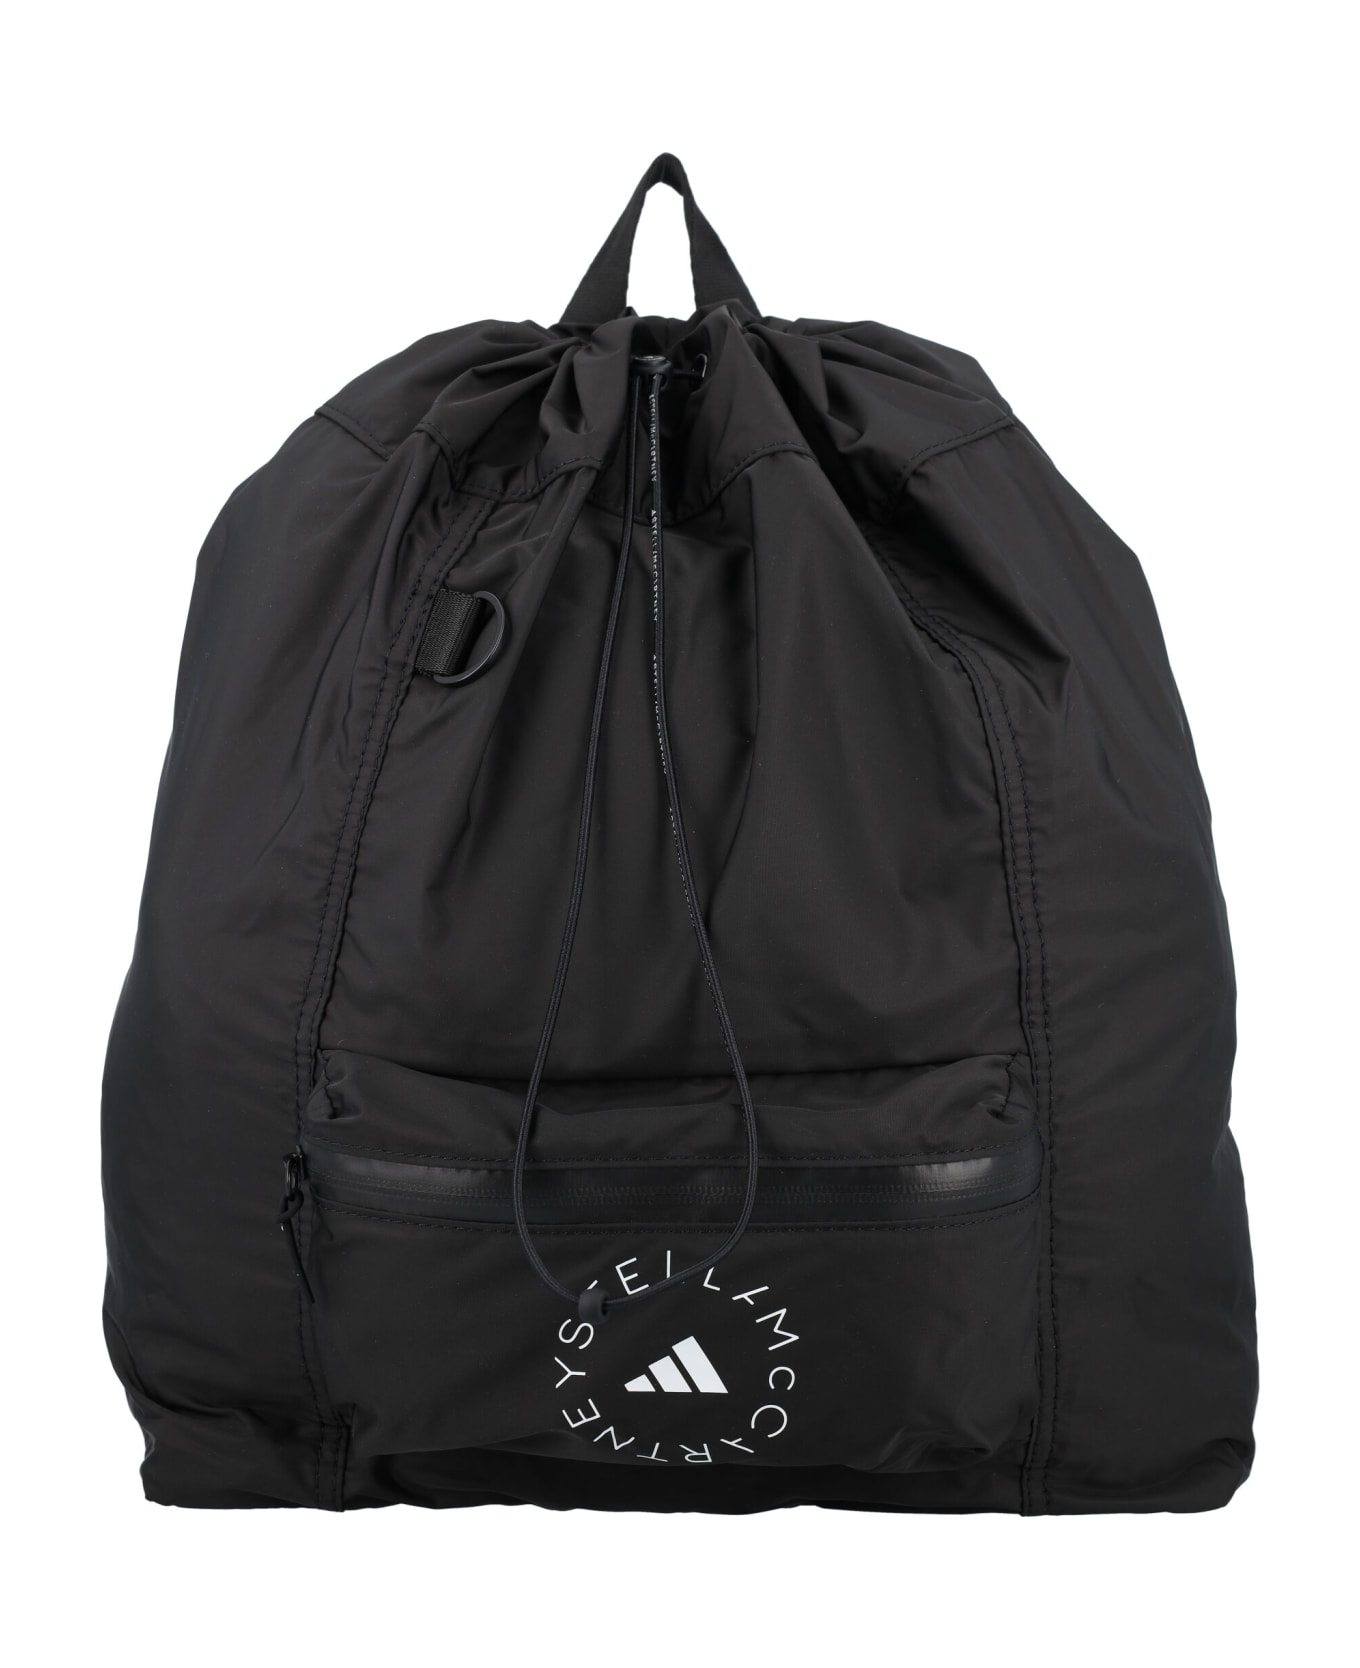 Adidas by Stella McCartney Logo Gym Bag